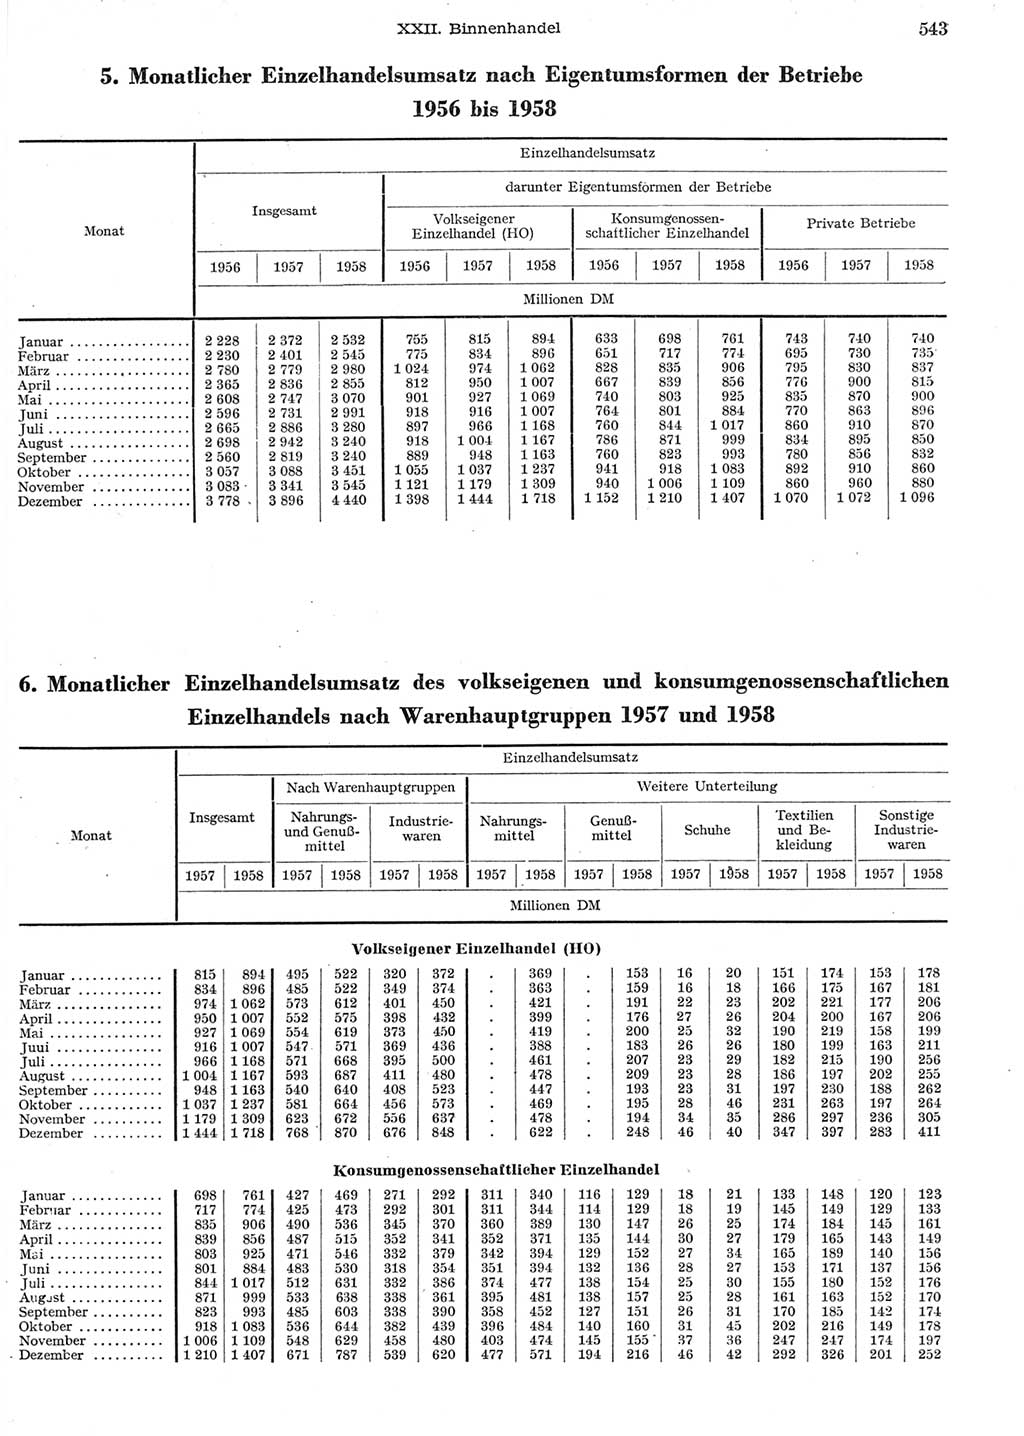 Statistisches Jahrbuch der Deutschen Demokratischen Republik (DDR) 1958, Seite 543 (Stat. Jb. DDR 1958, S. 543)